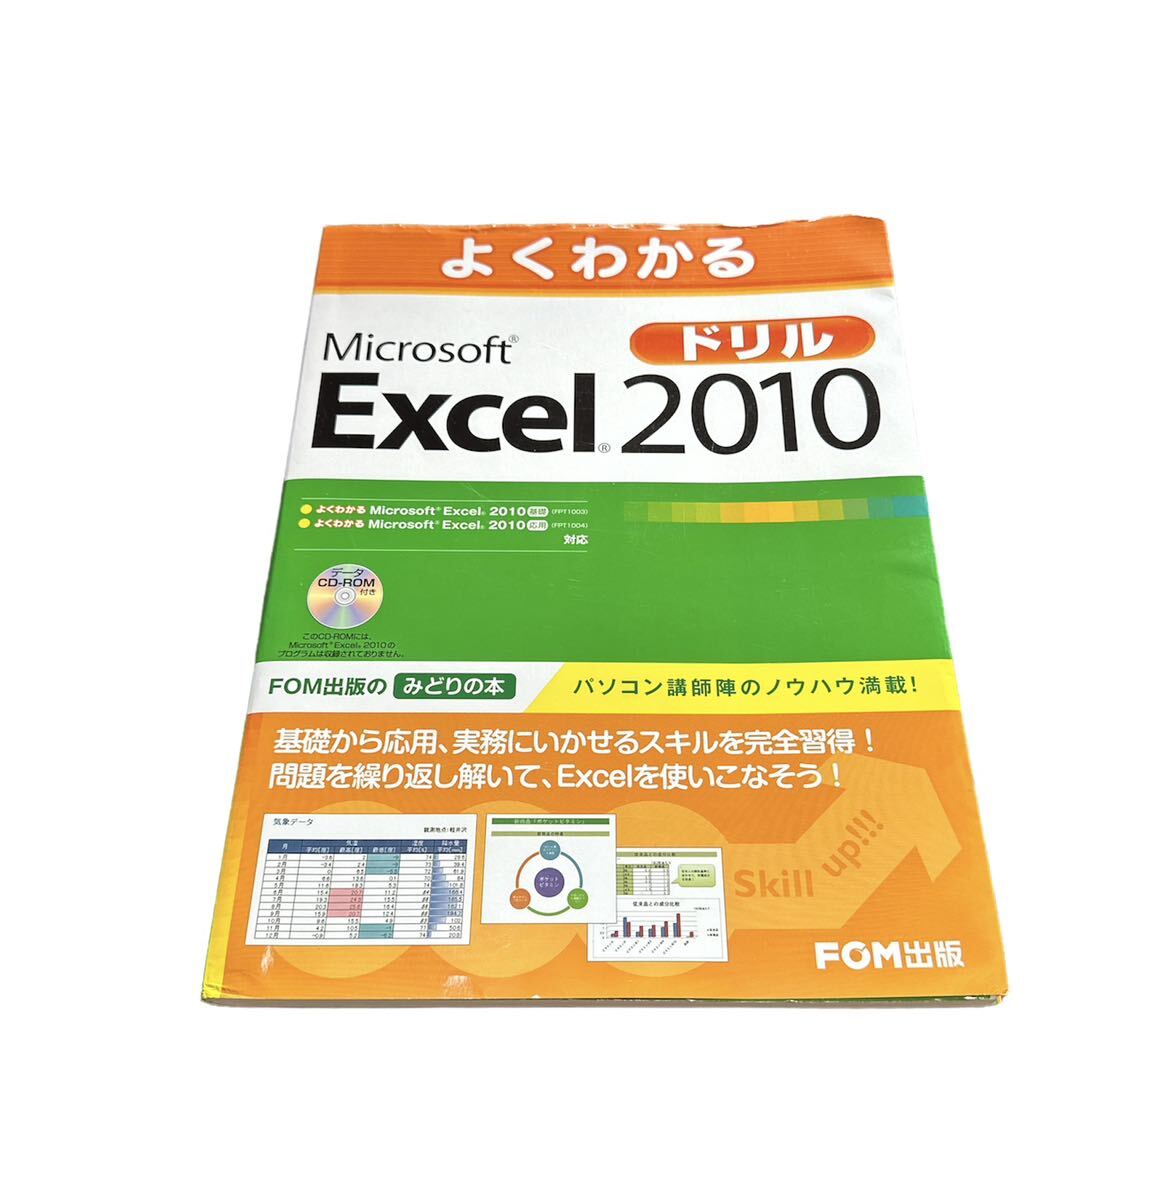  хорошо понимать Microsoft Excel 2010 дрель | Fujitsu ef*o-* M персональный компьютер справочник текст FOM выпускать Word основа 